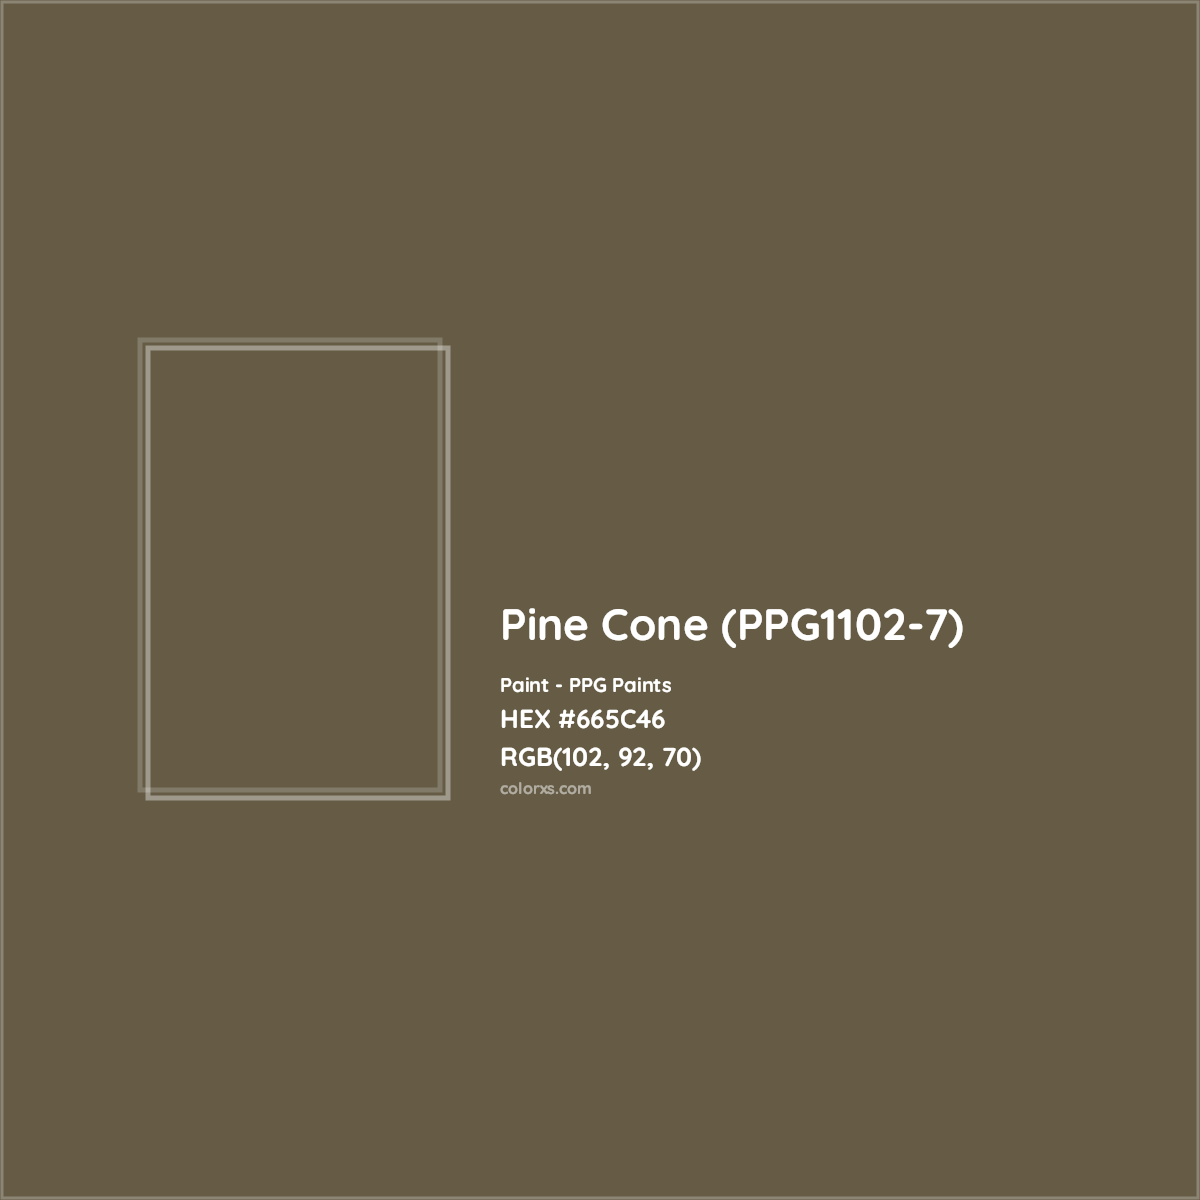 HEX #665C46 Pine Cone (PPG1102-7) Paint PPG Paints - Color Code